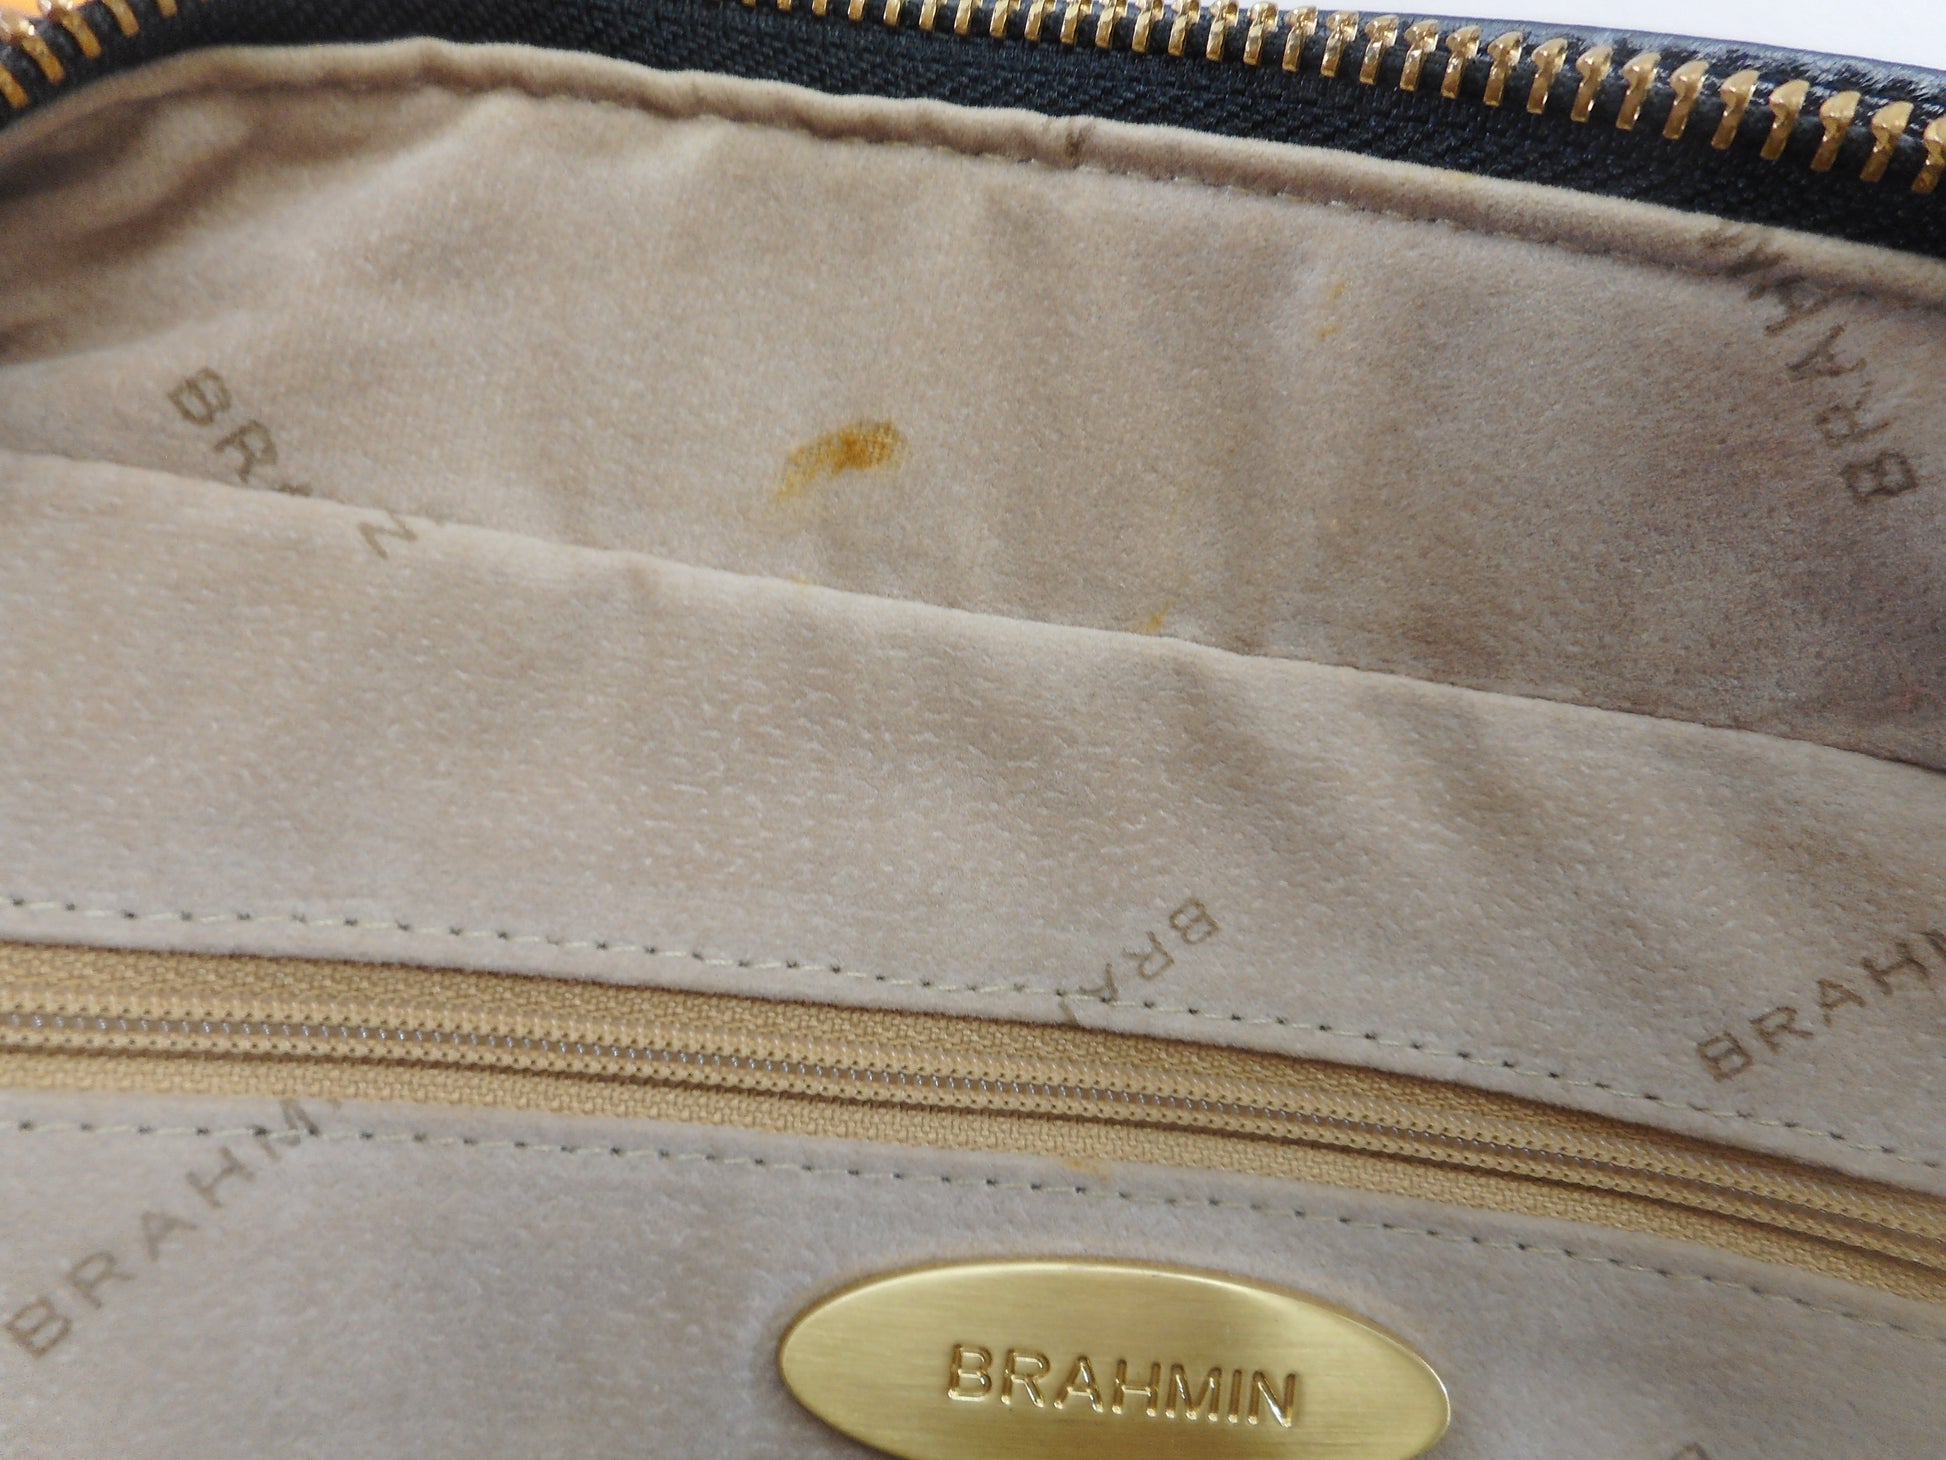 Brahmin Alligator Black Leather Satchel Handbag Shoulder Bag - Used Once EUC stain